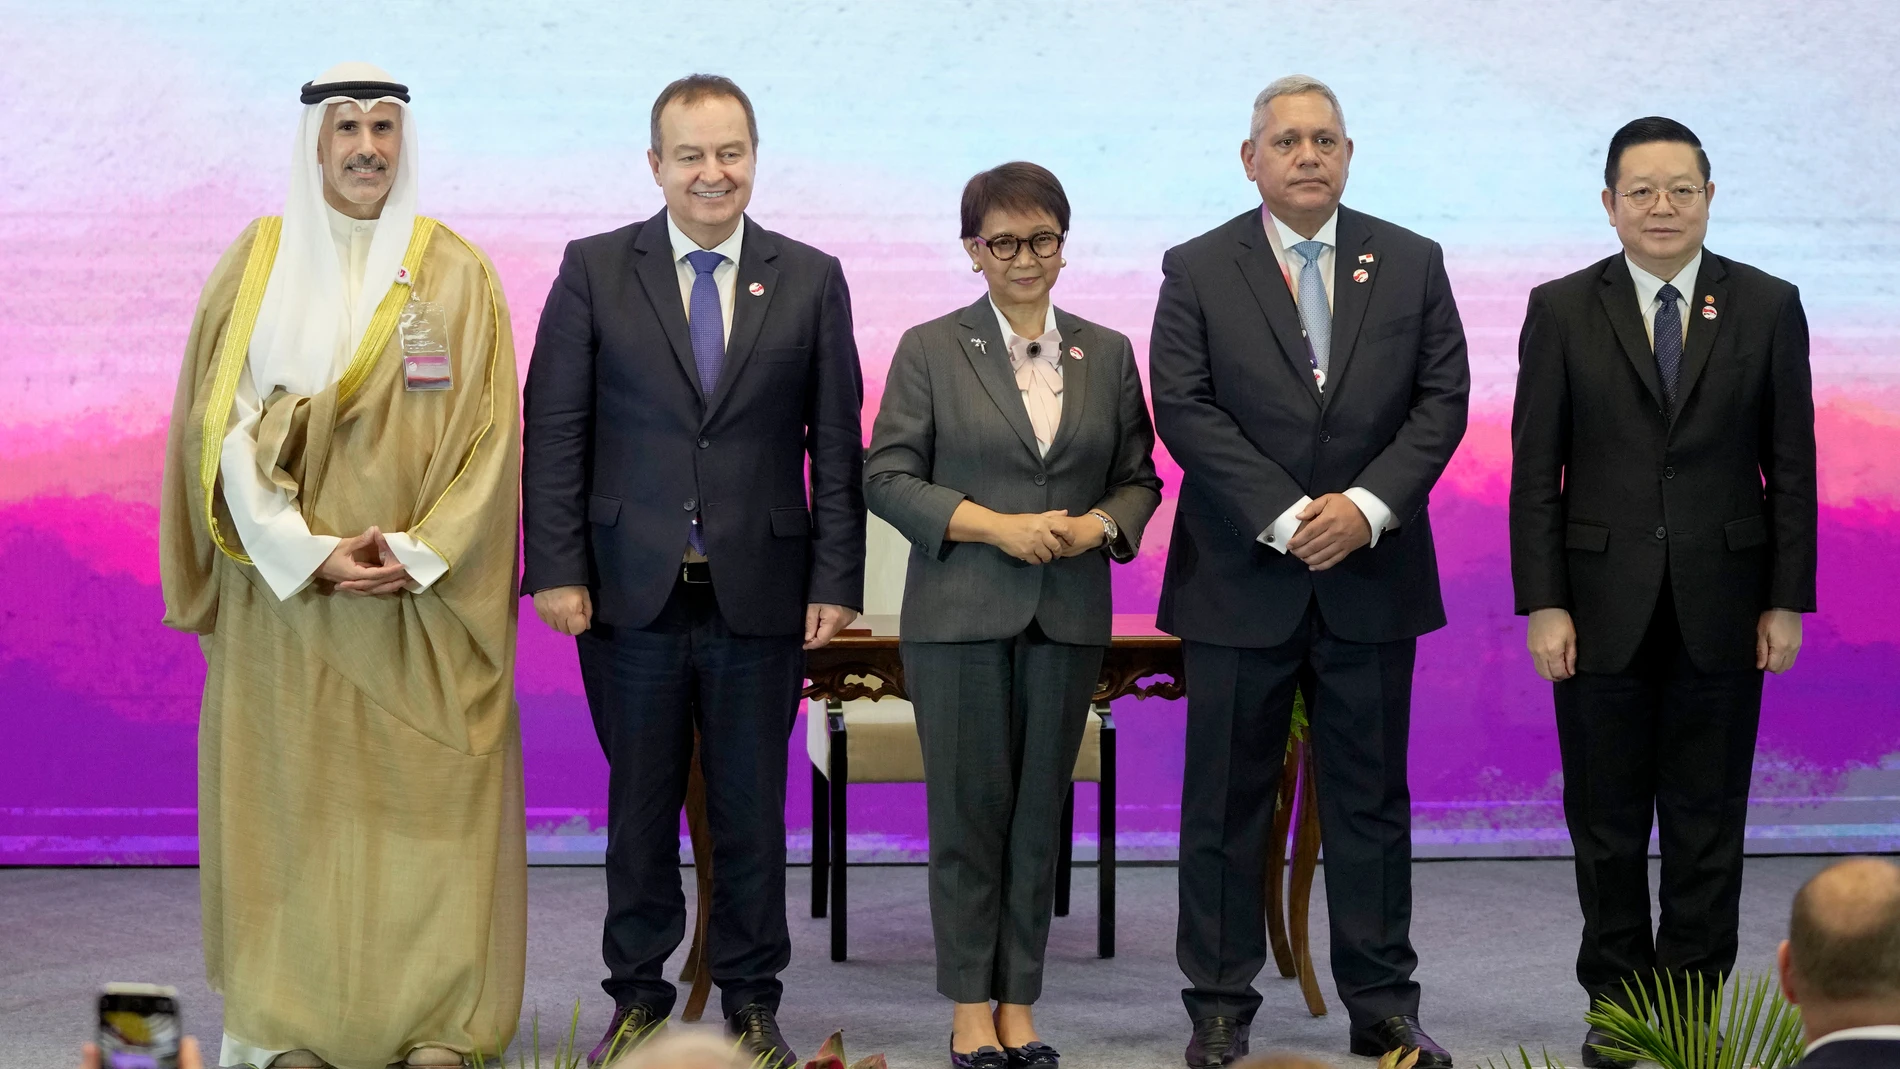 De izquierda a derecha, el Viceministro de Asuntos Exteriores de Kuwait, Sheikh Jarrah Jaber Al-Ahmad Al-Sabah, el Ministro de Asuntos Exteriores de Serbia, Ivica Dacic, la Ministra de Asuntos Exteriores de Indonesia, Retno Marsudi, el Viceministro de Asuntos Exteriores de Panamá, Vladimir Franco, y el Secretario General de la ASEAN, Kao Kim Hourn